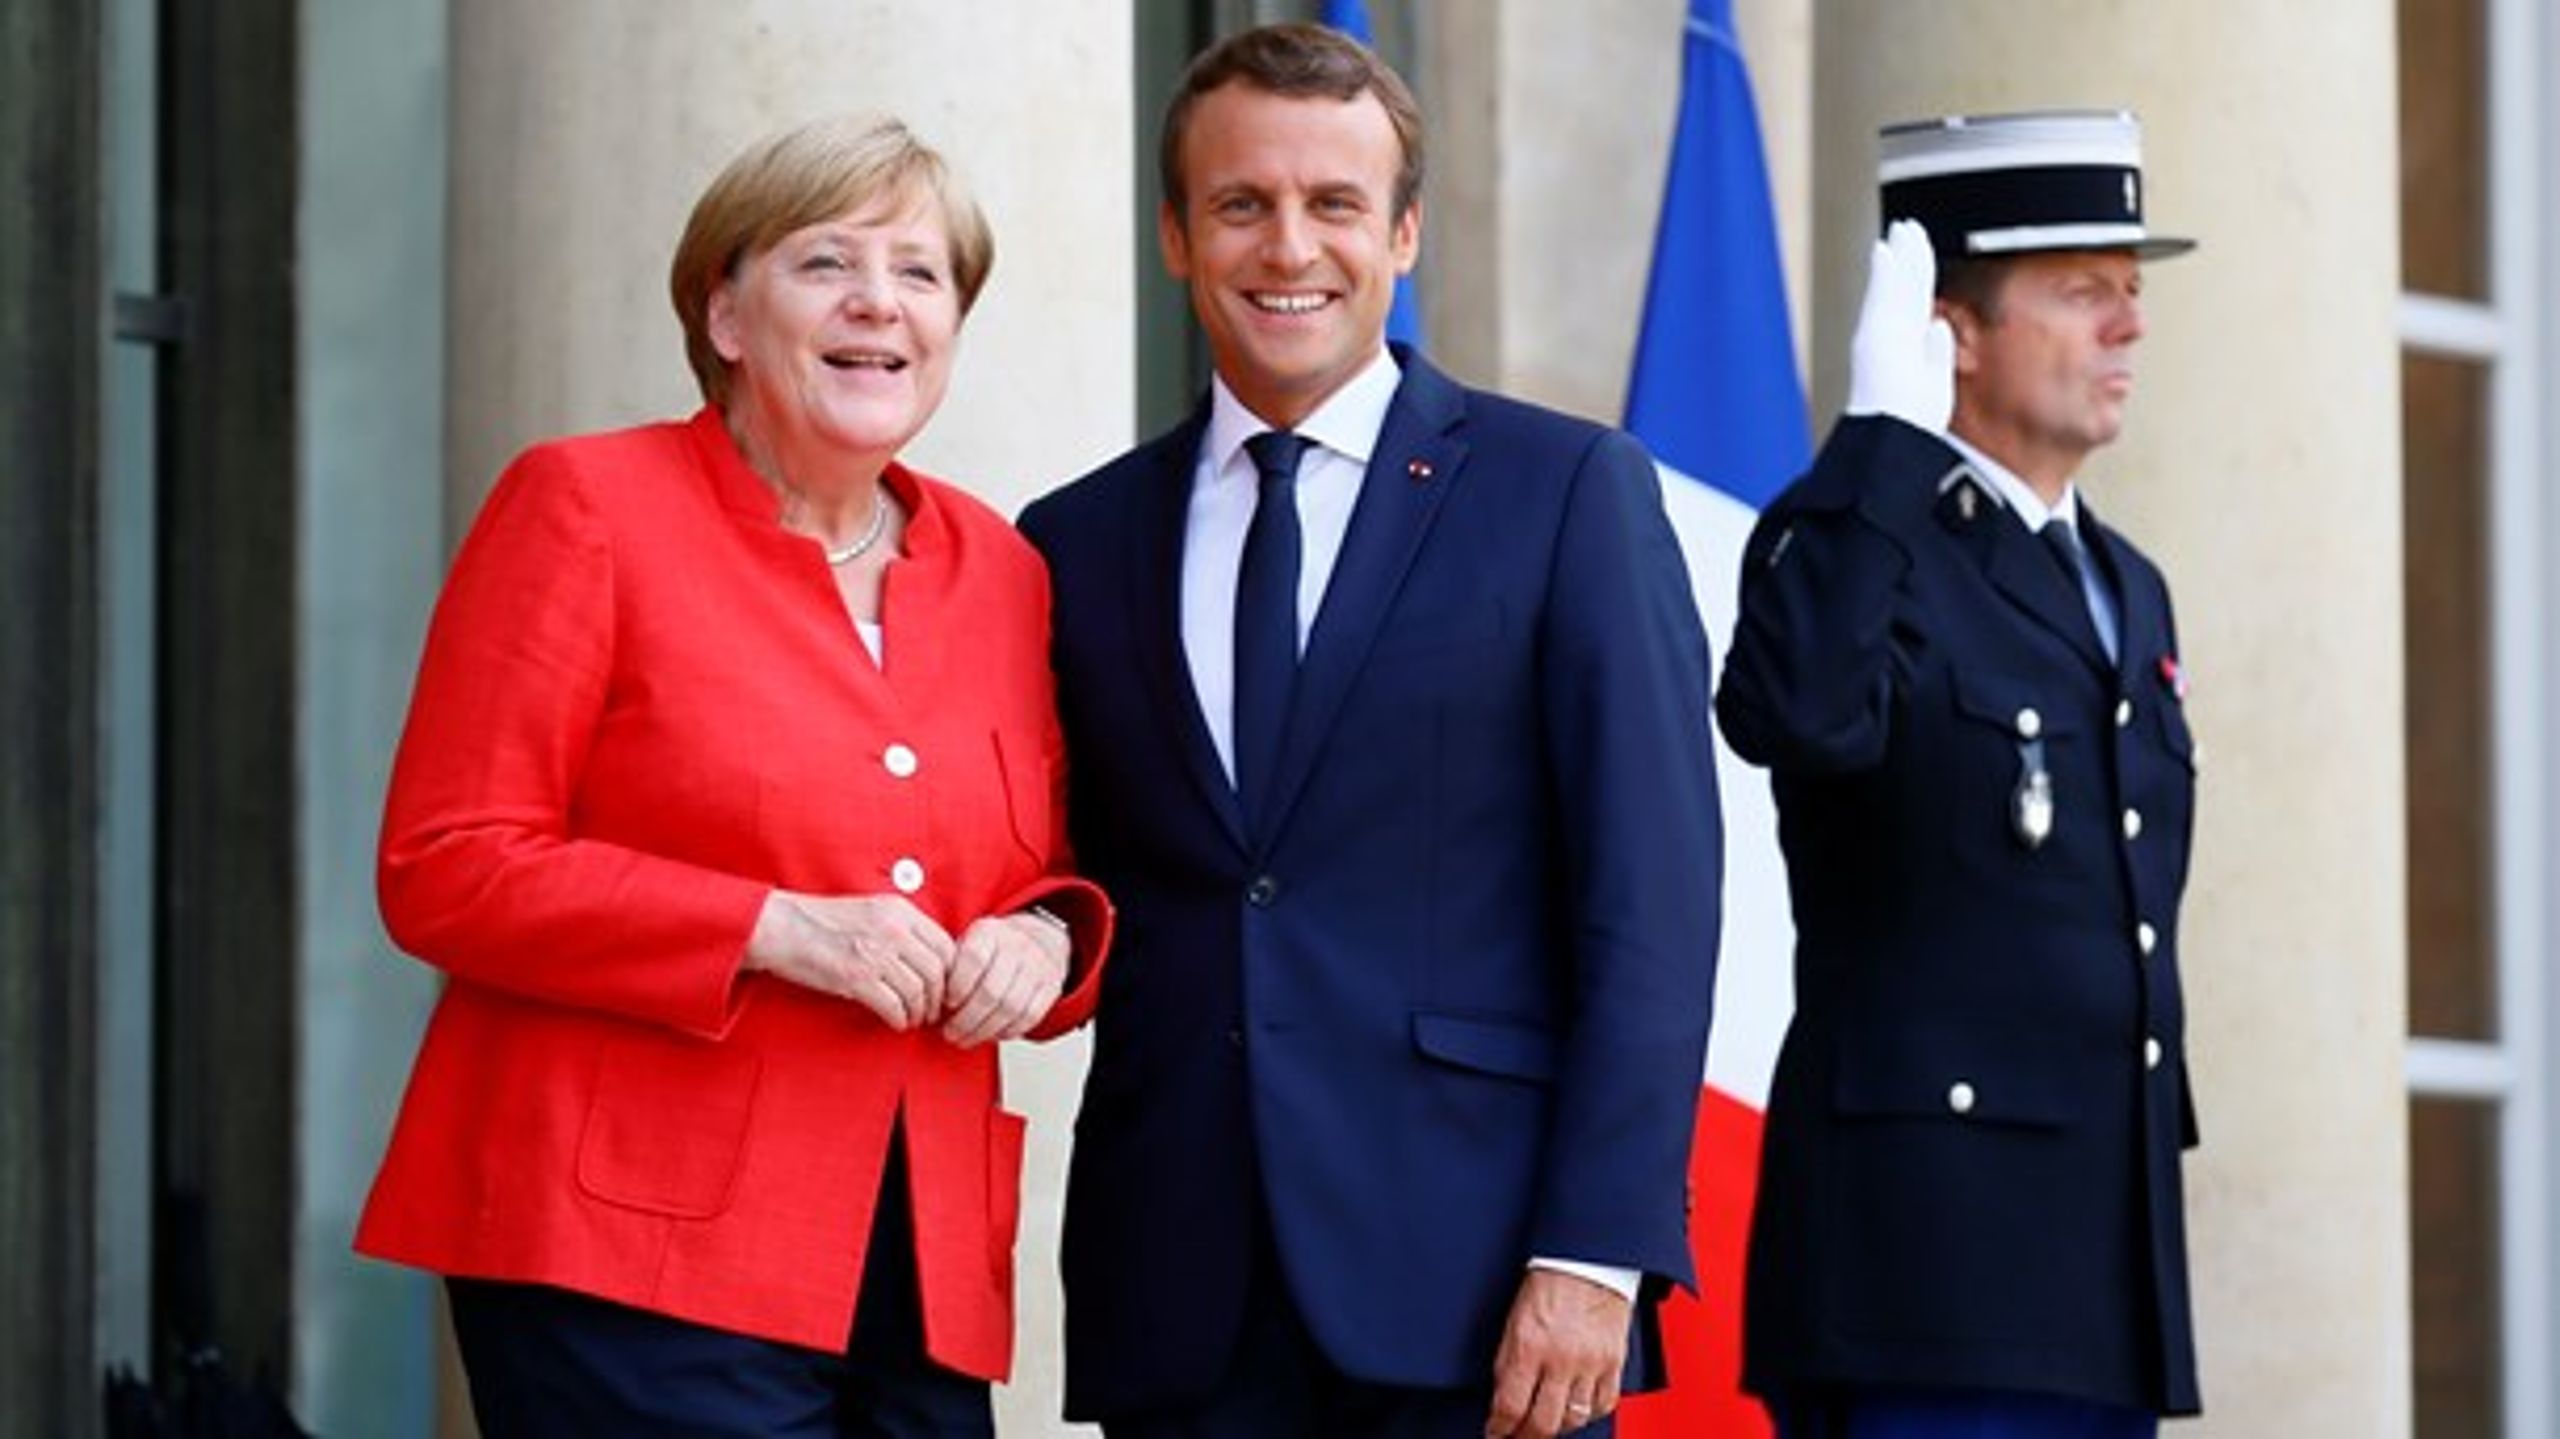 Tysklands kansler, Angela Merkel, og den franske præsident, Emmanuel Macron, er ved at forberede store nye fremstød i det europæiske samarbejde, siger de.